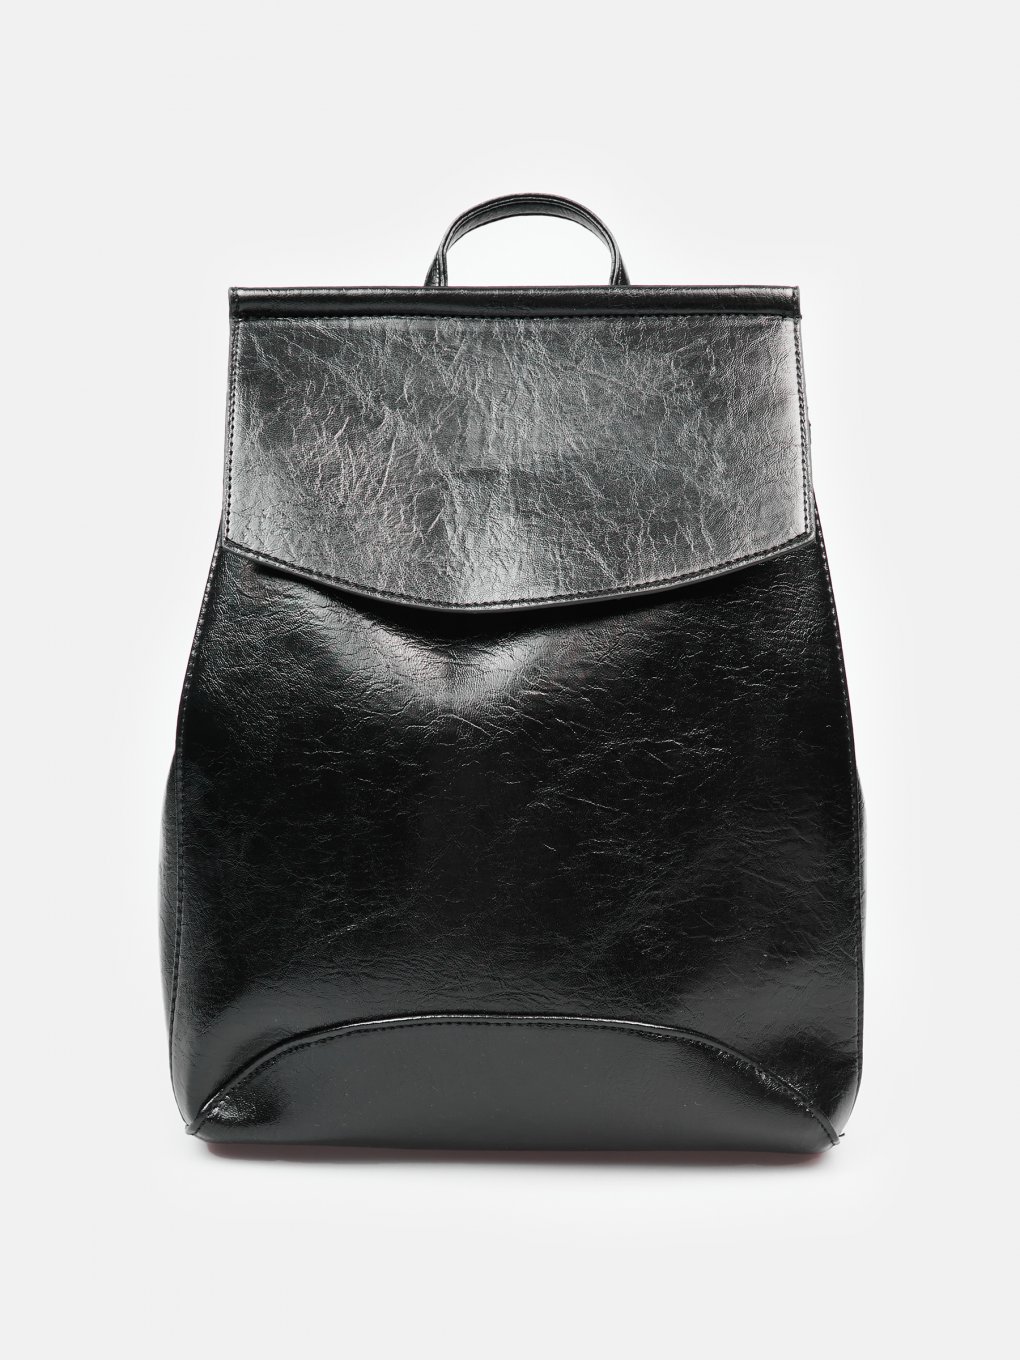 discount 63% Black Single Parfois Handbag WOMEN FASHION Bags Leatherette 